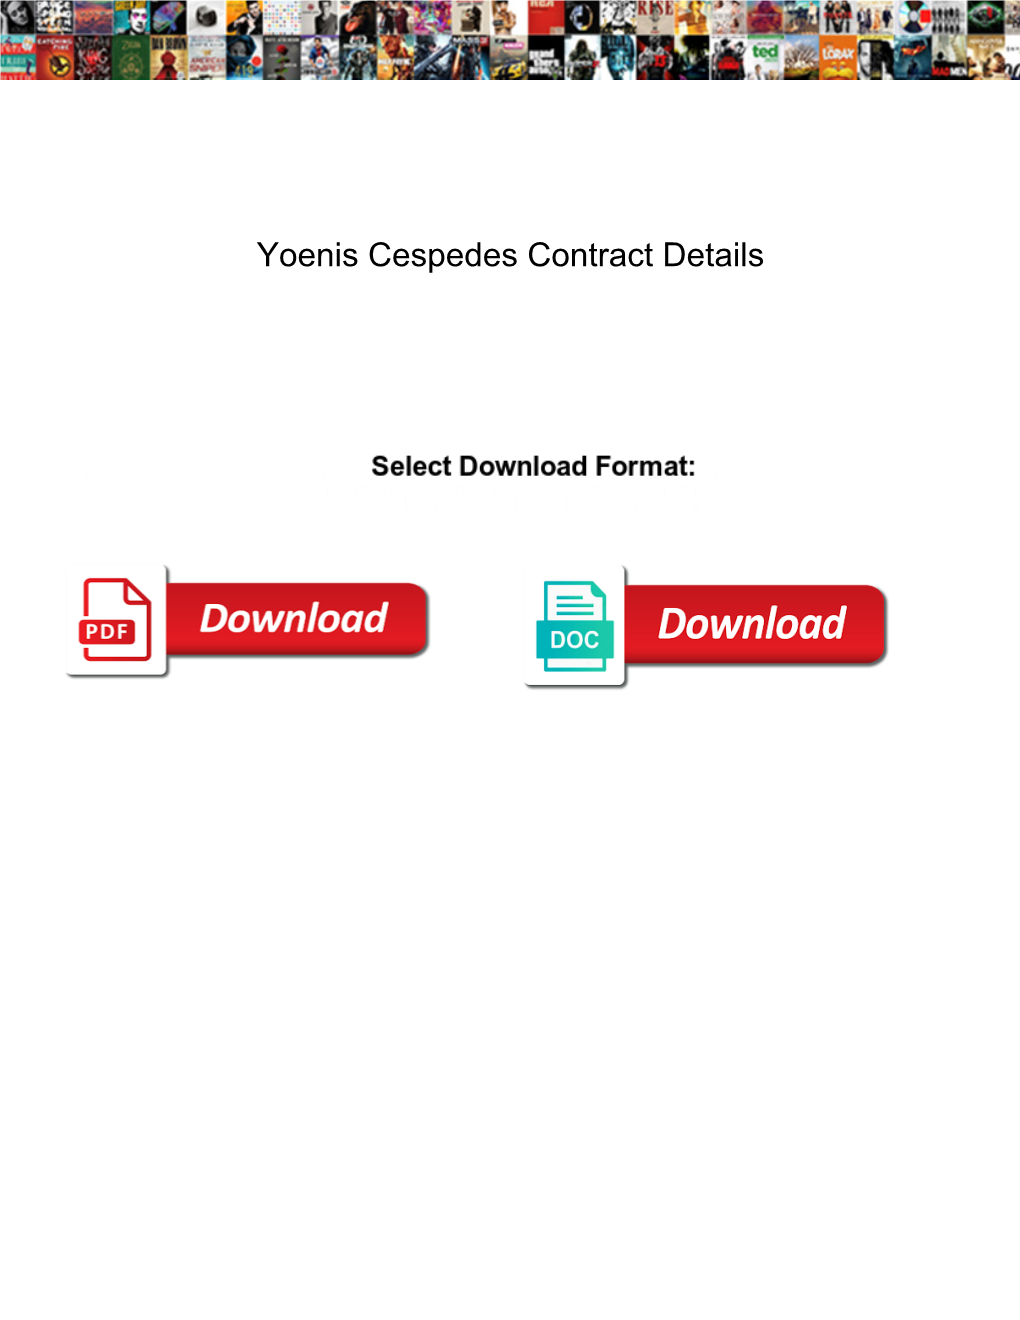 Yoenis Cespedes Contract Details